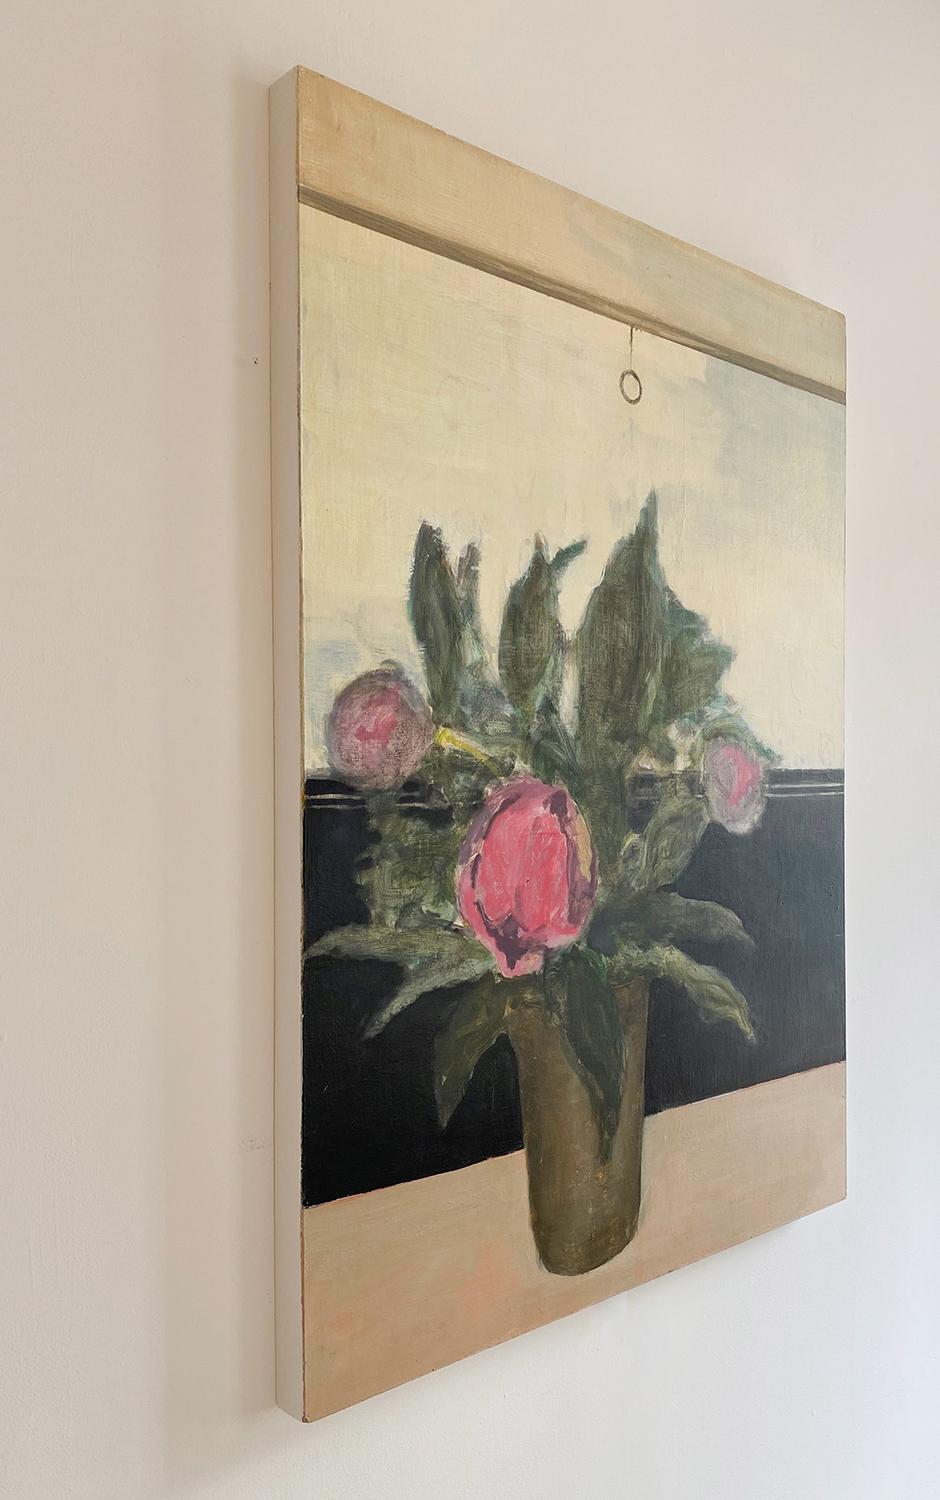 Vase dans la fenêtre (peinture impressionniste de nature morte florale de pivoines roses) - Impressionnisme Painting par David Konigsberg